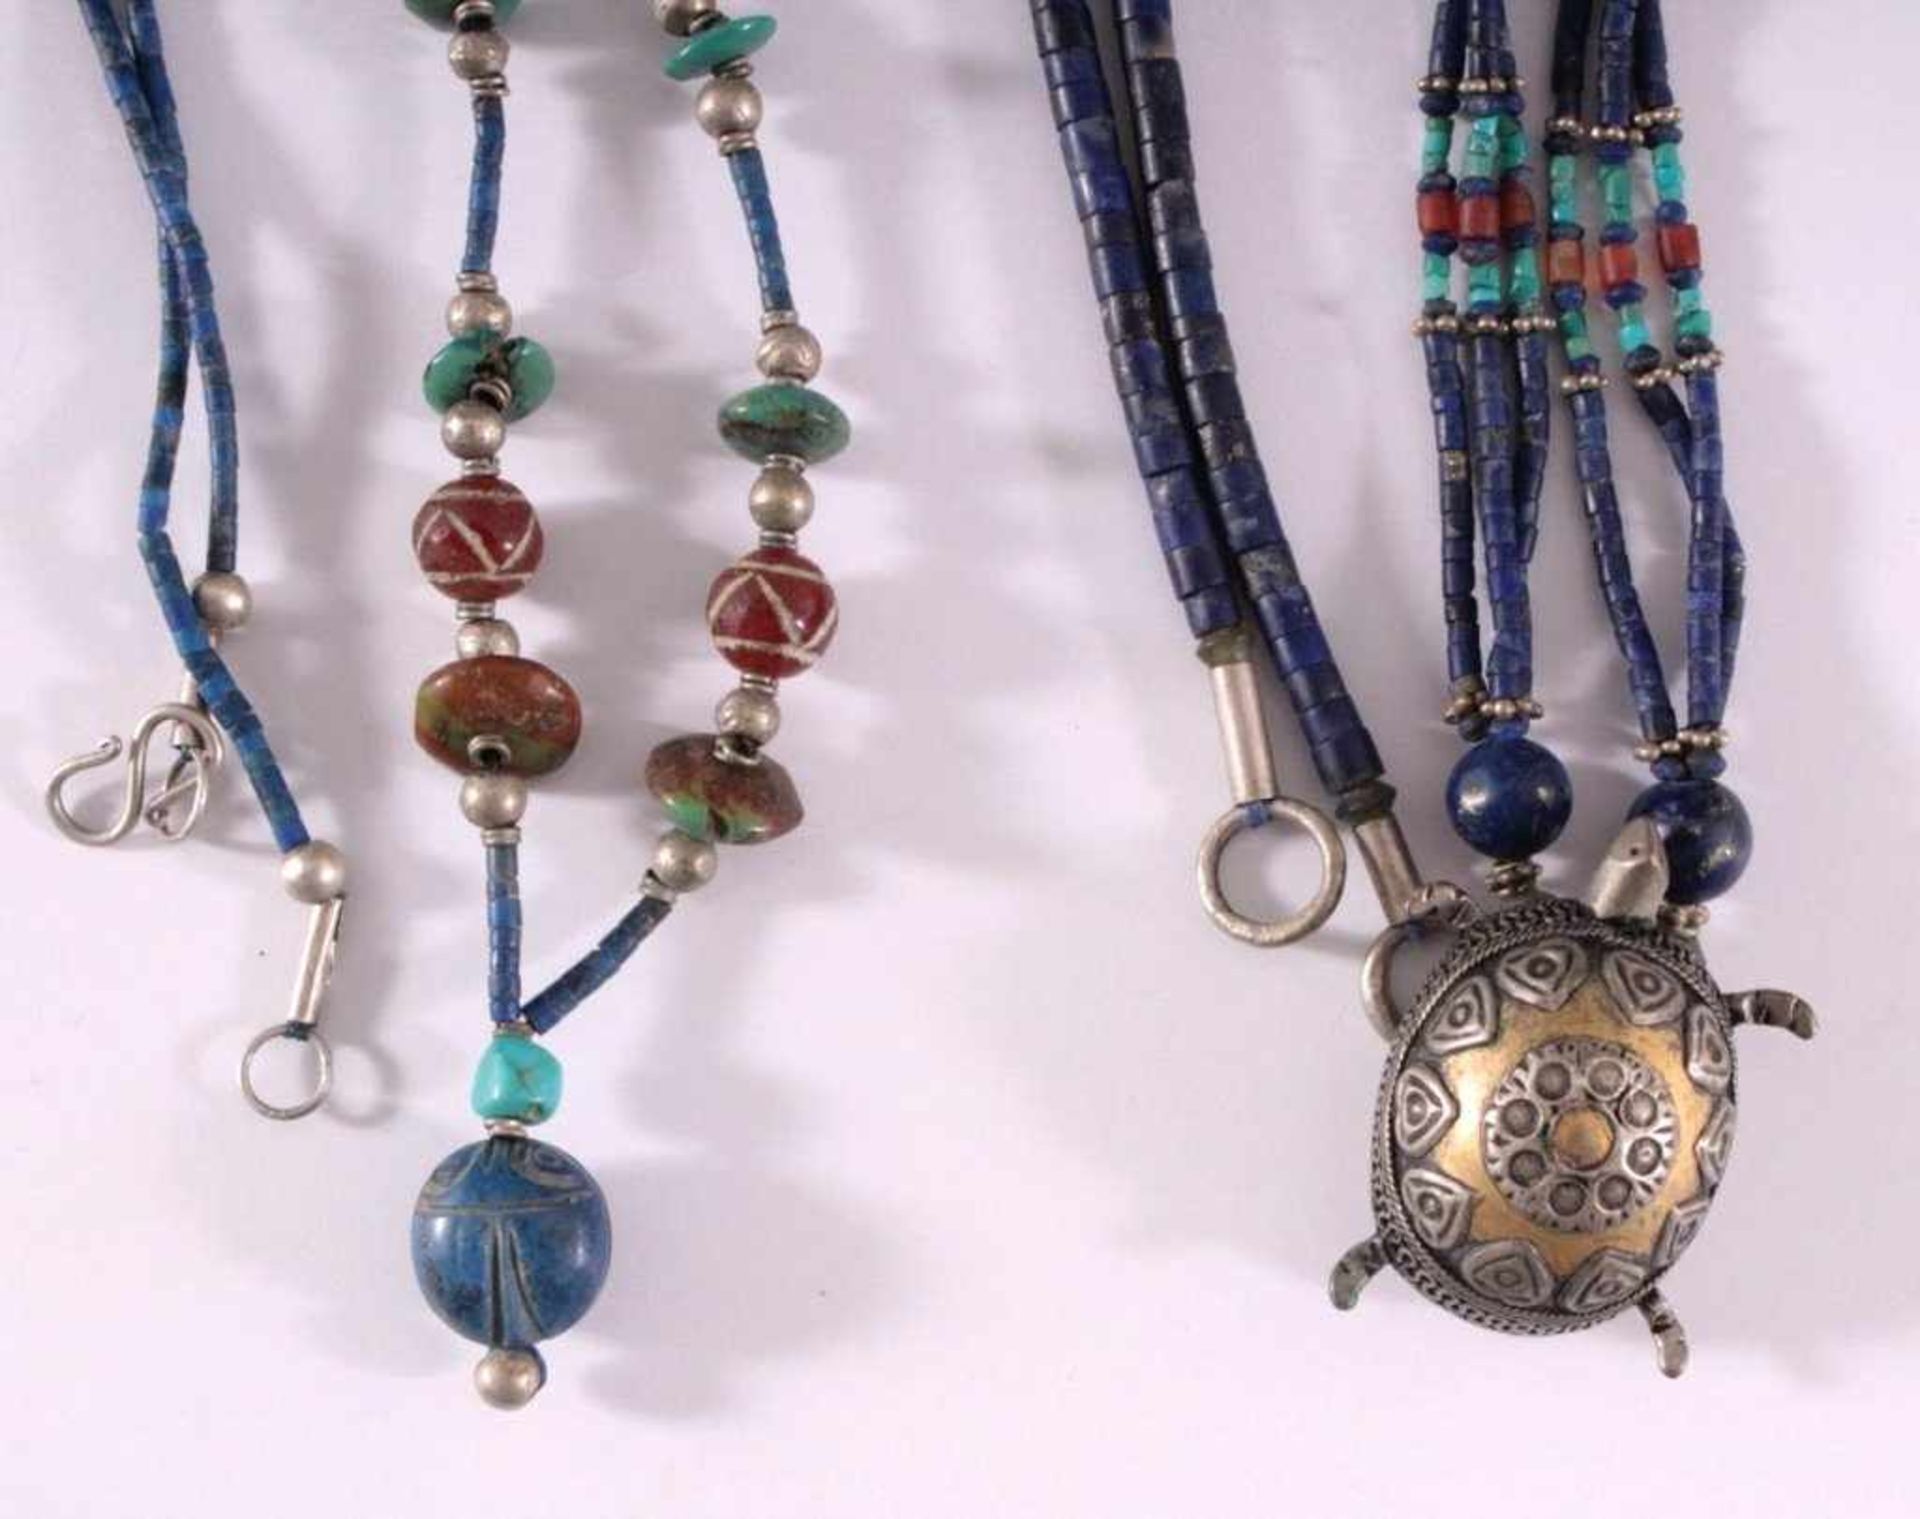 Vier HalskettenKetten aus Lapislazuli, Türkis, Carneol, Silber..aufgefädelt, Anhänger aus Tombak, - Image 2 of 3